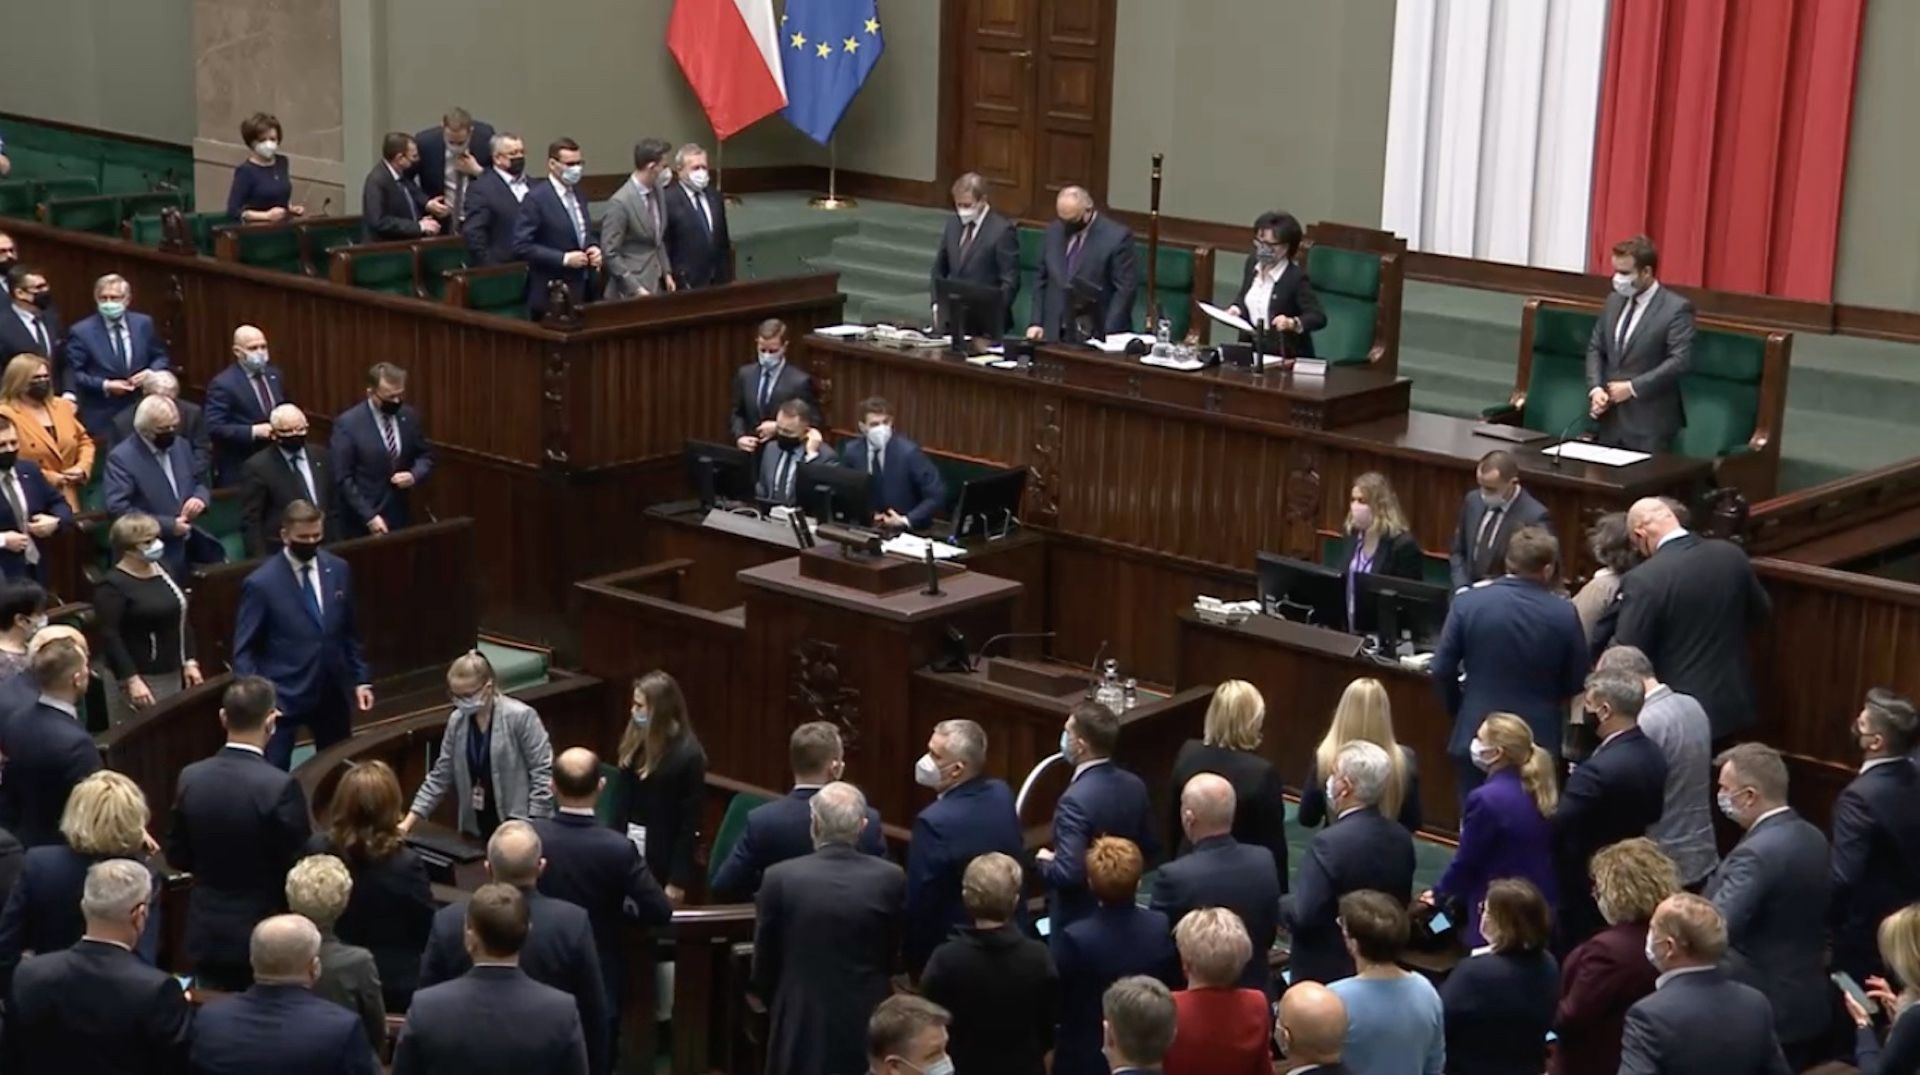 Minuta ciszy w Sejmie, część posłów wyszła z sali